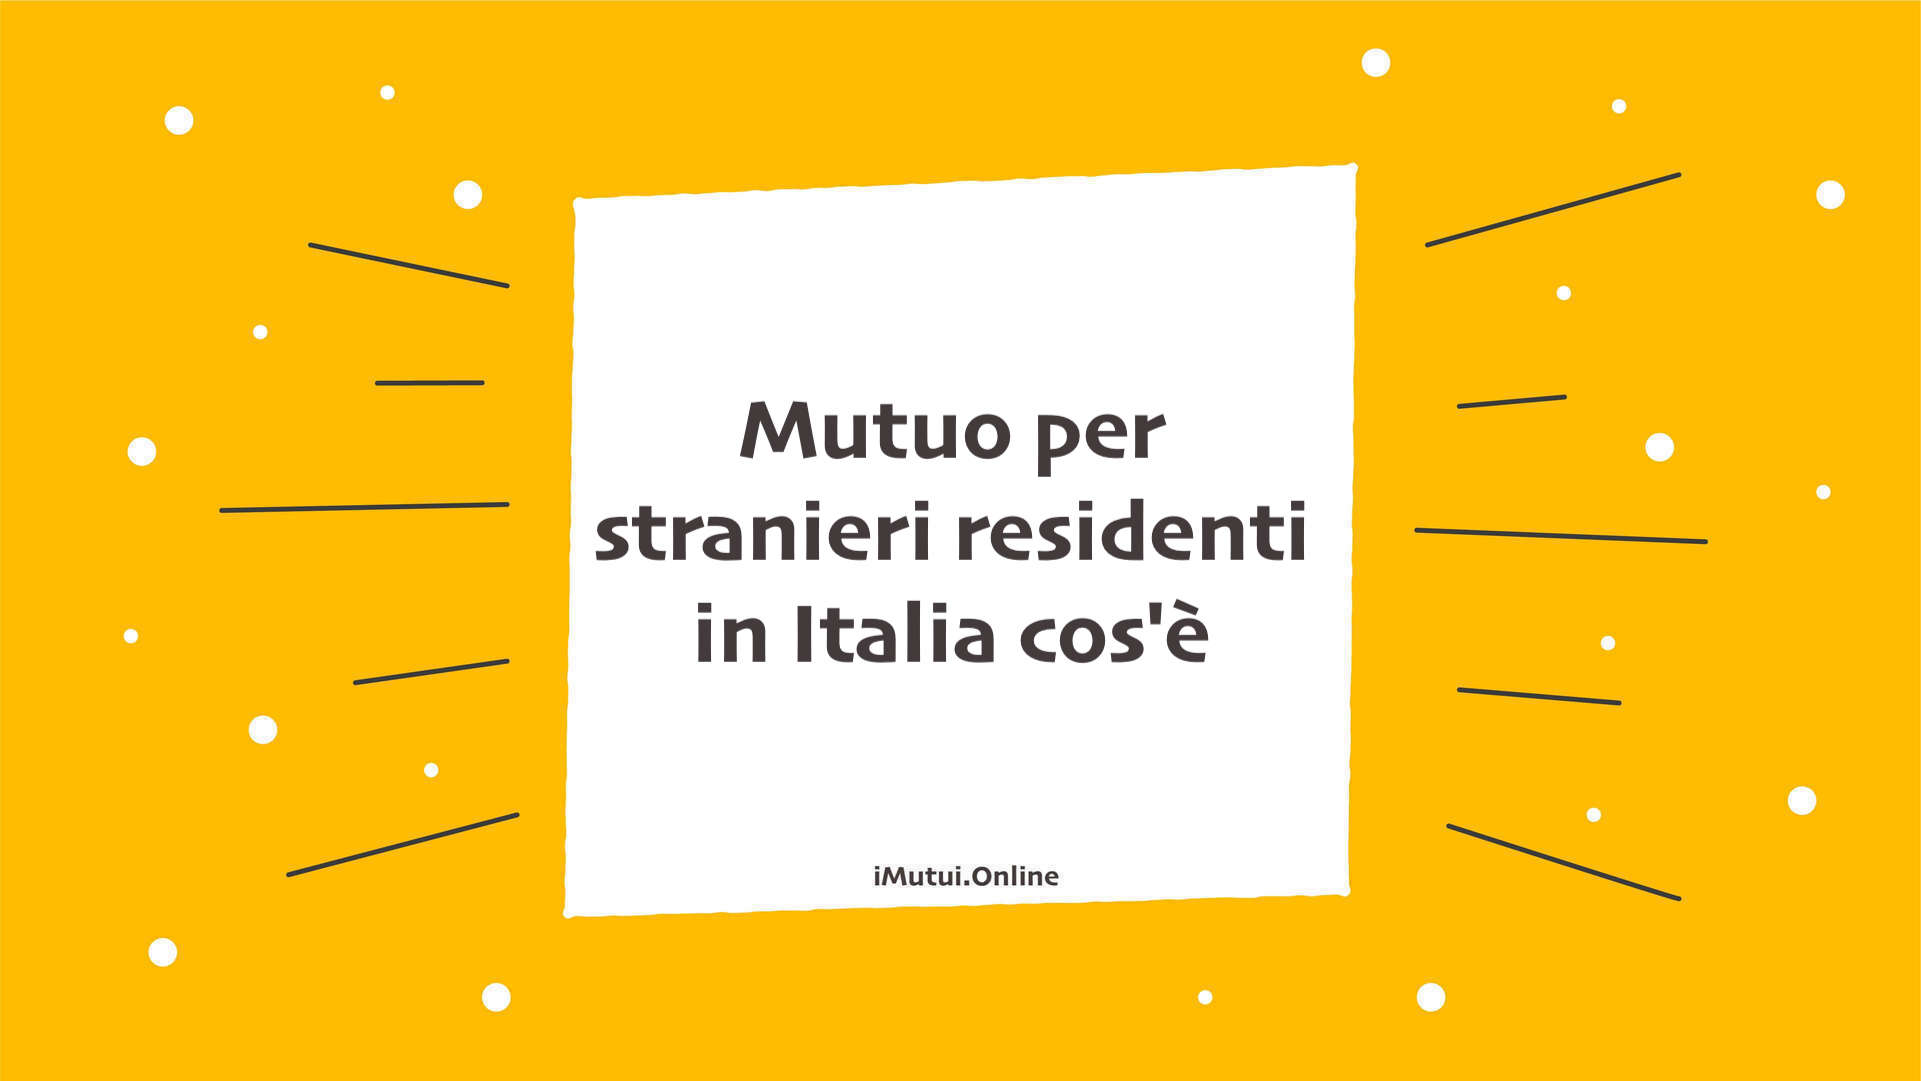 Mutuo per stranieri residenti in Italia cos'è